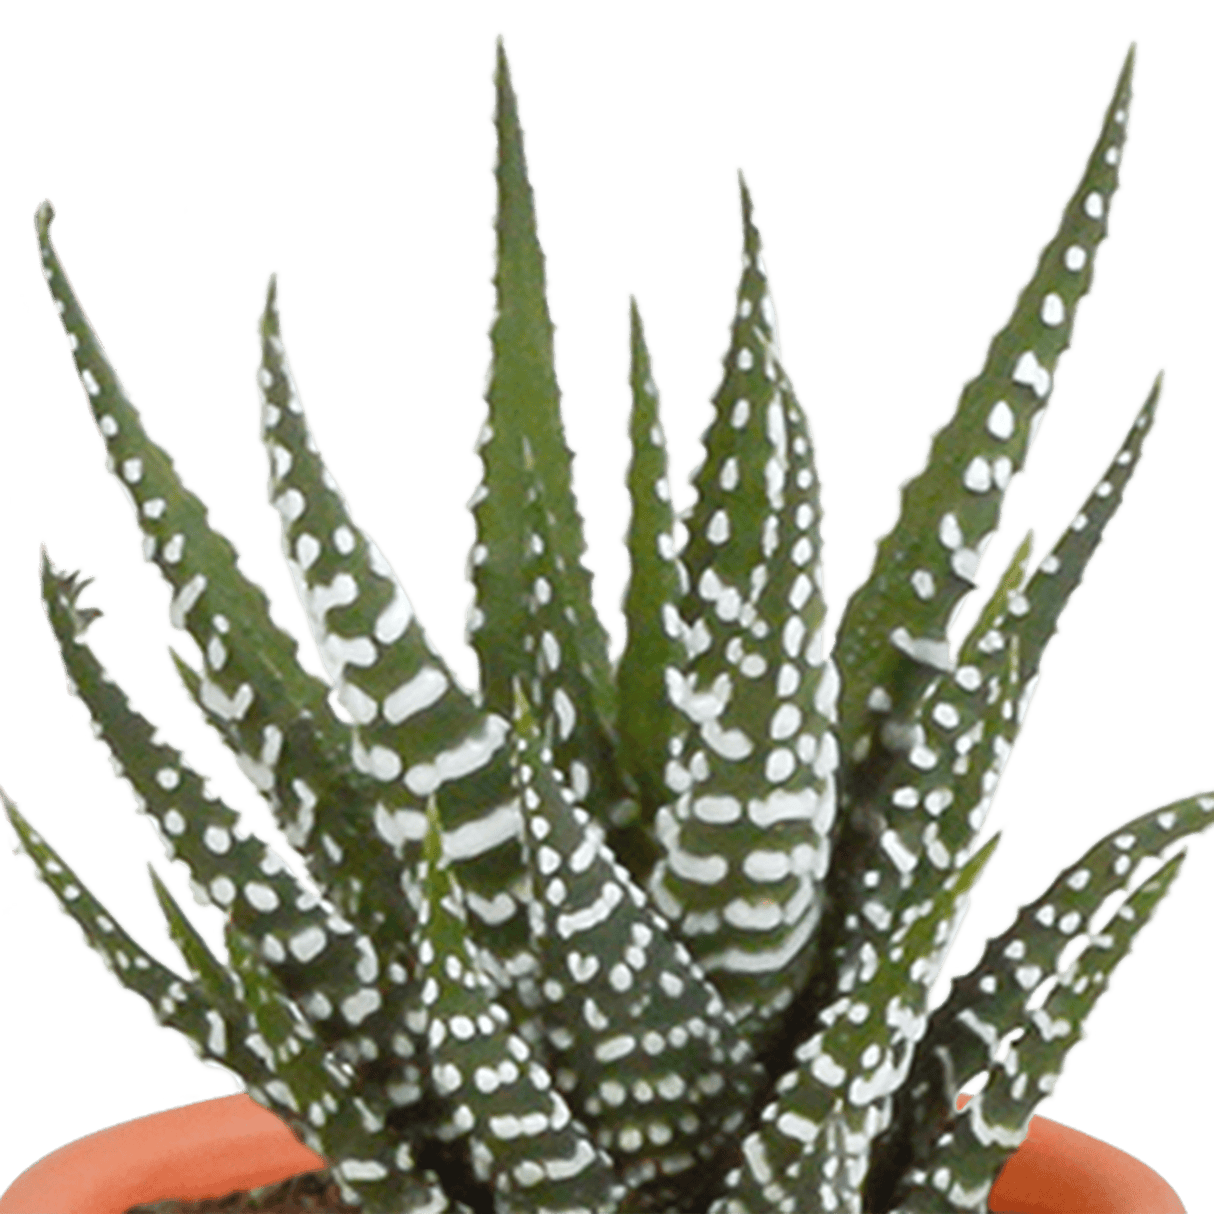 Livraison plante - Cactus et succulentes, box de 15 plantes - h8cm, Ø5,5cm - plantes d'intérieur